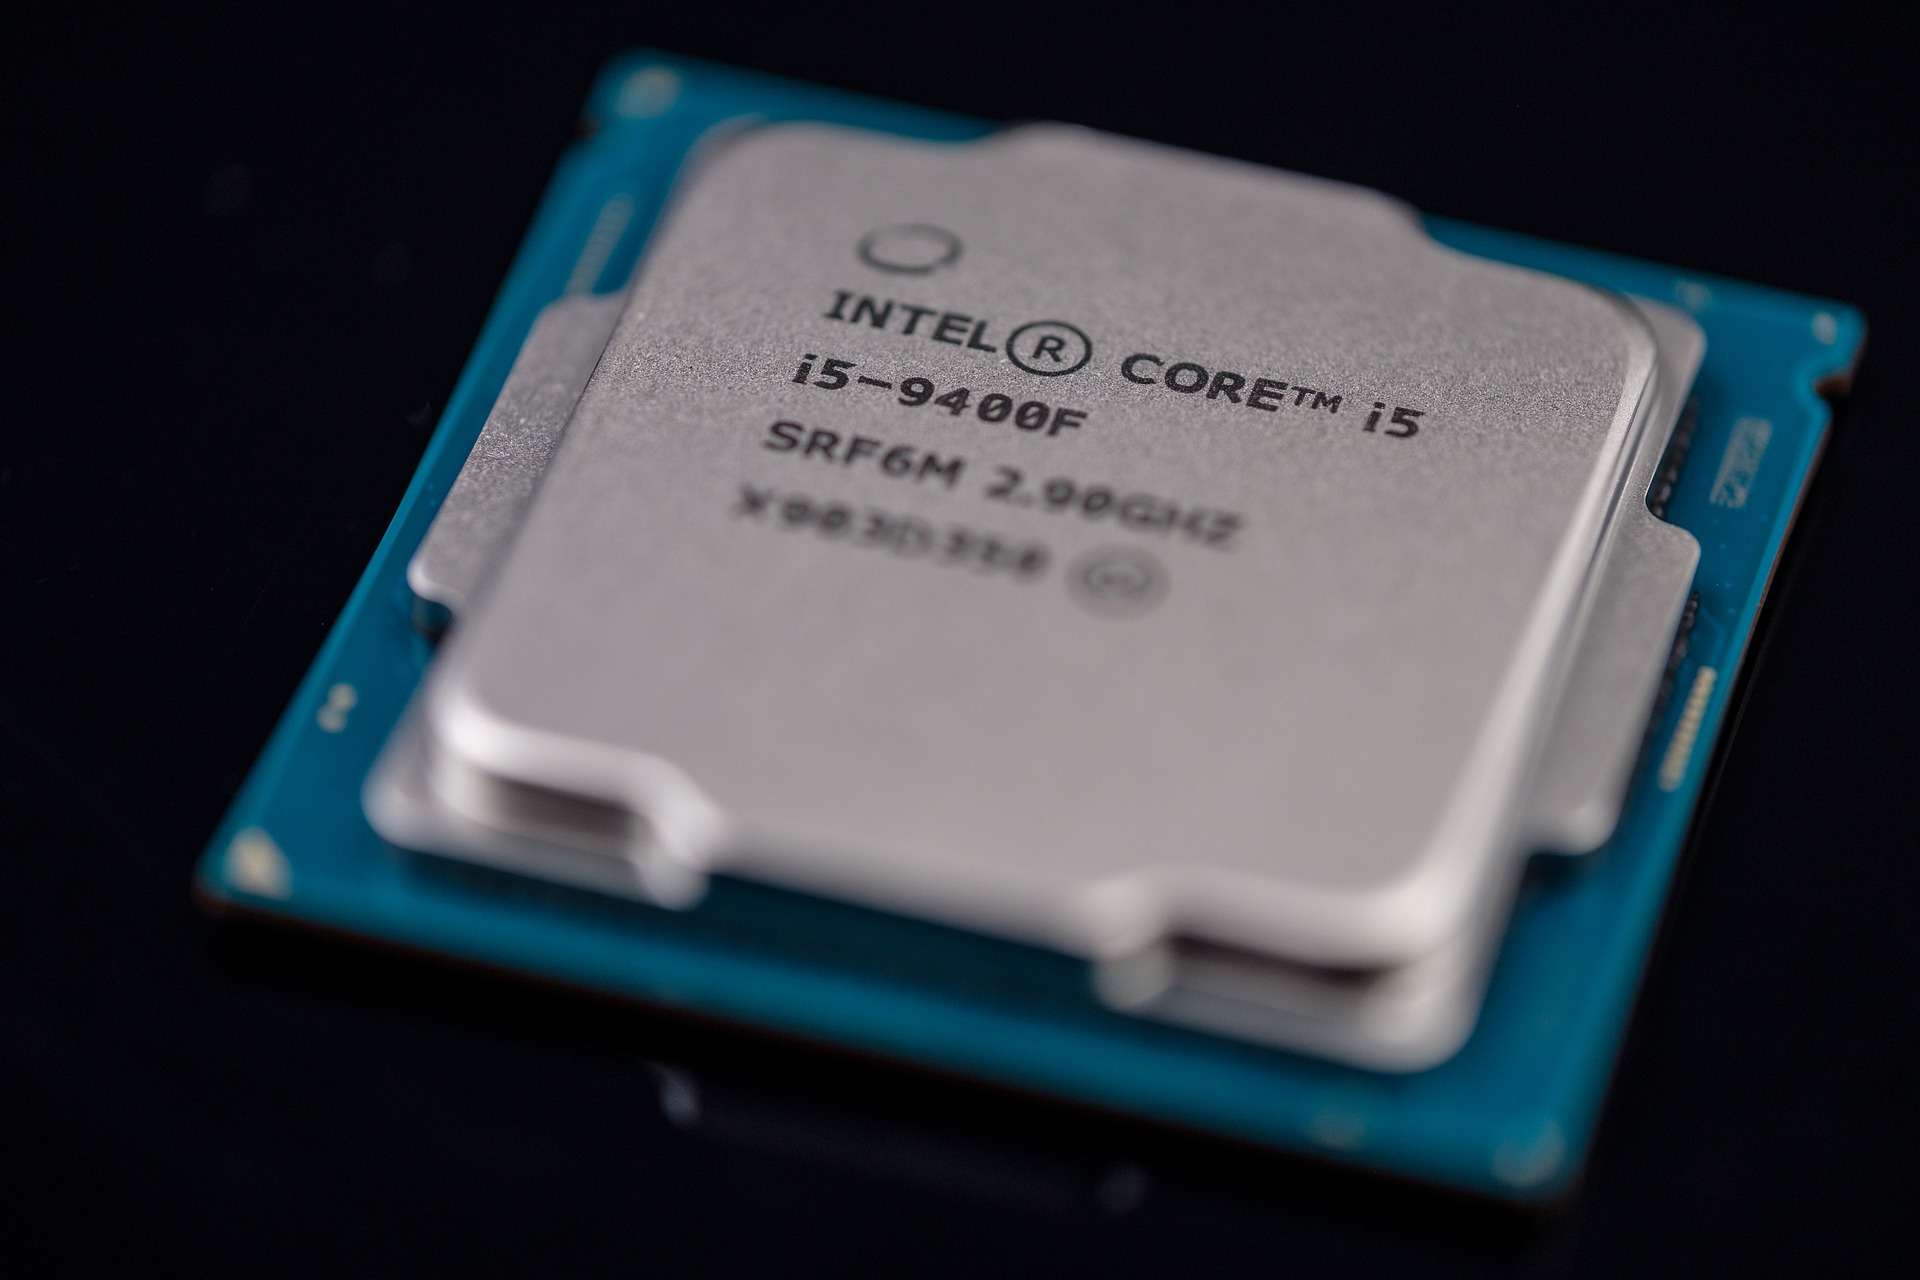 Requisitos recomendados do sistema: Melhore sua experiência de jogo com uma configuração mais potente.
Processador: Intel Quad Core de 3.0 GHz ou equivalente